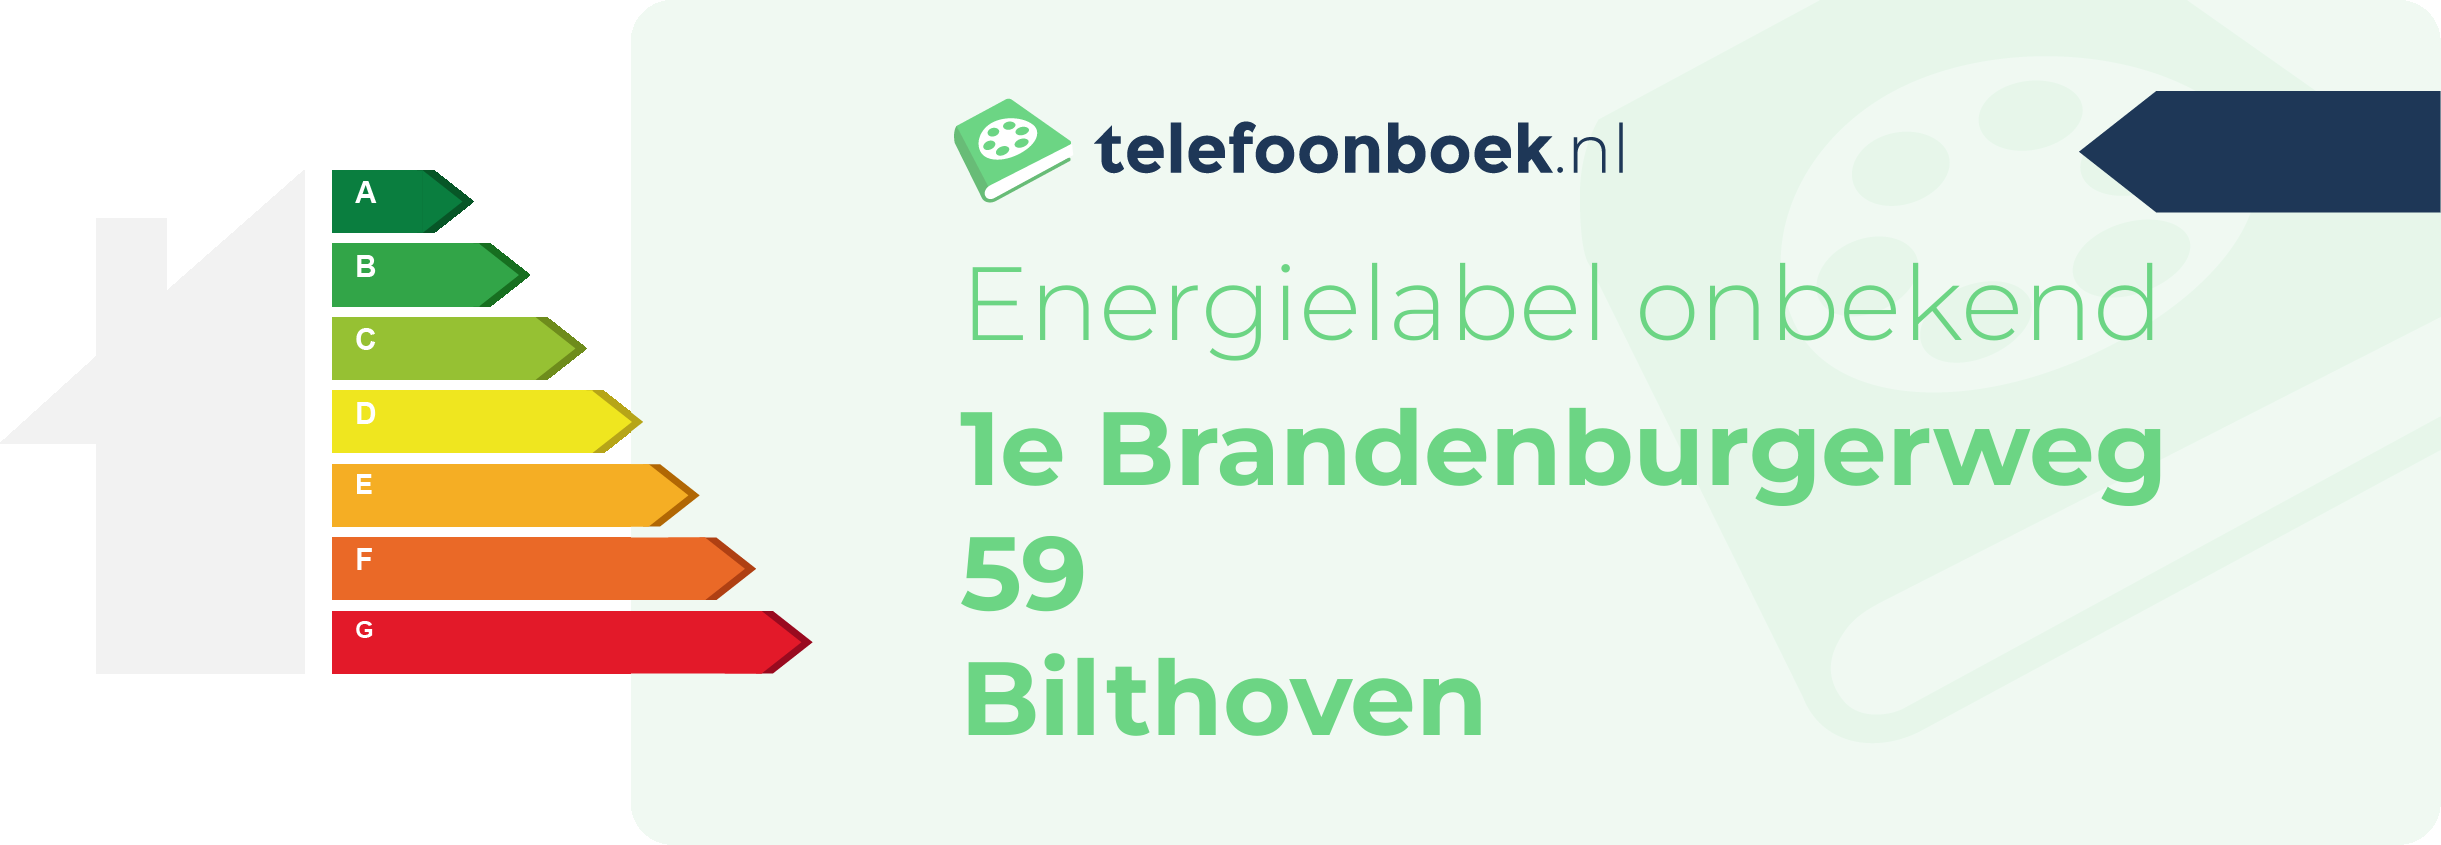 Energielabel 1e Brandenburgerweg 59 Bilthoven